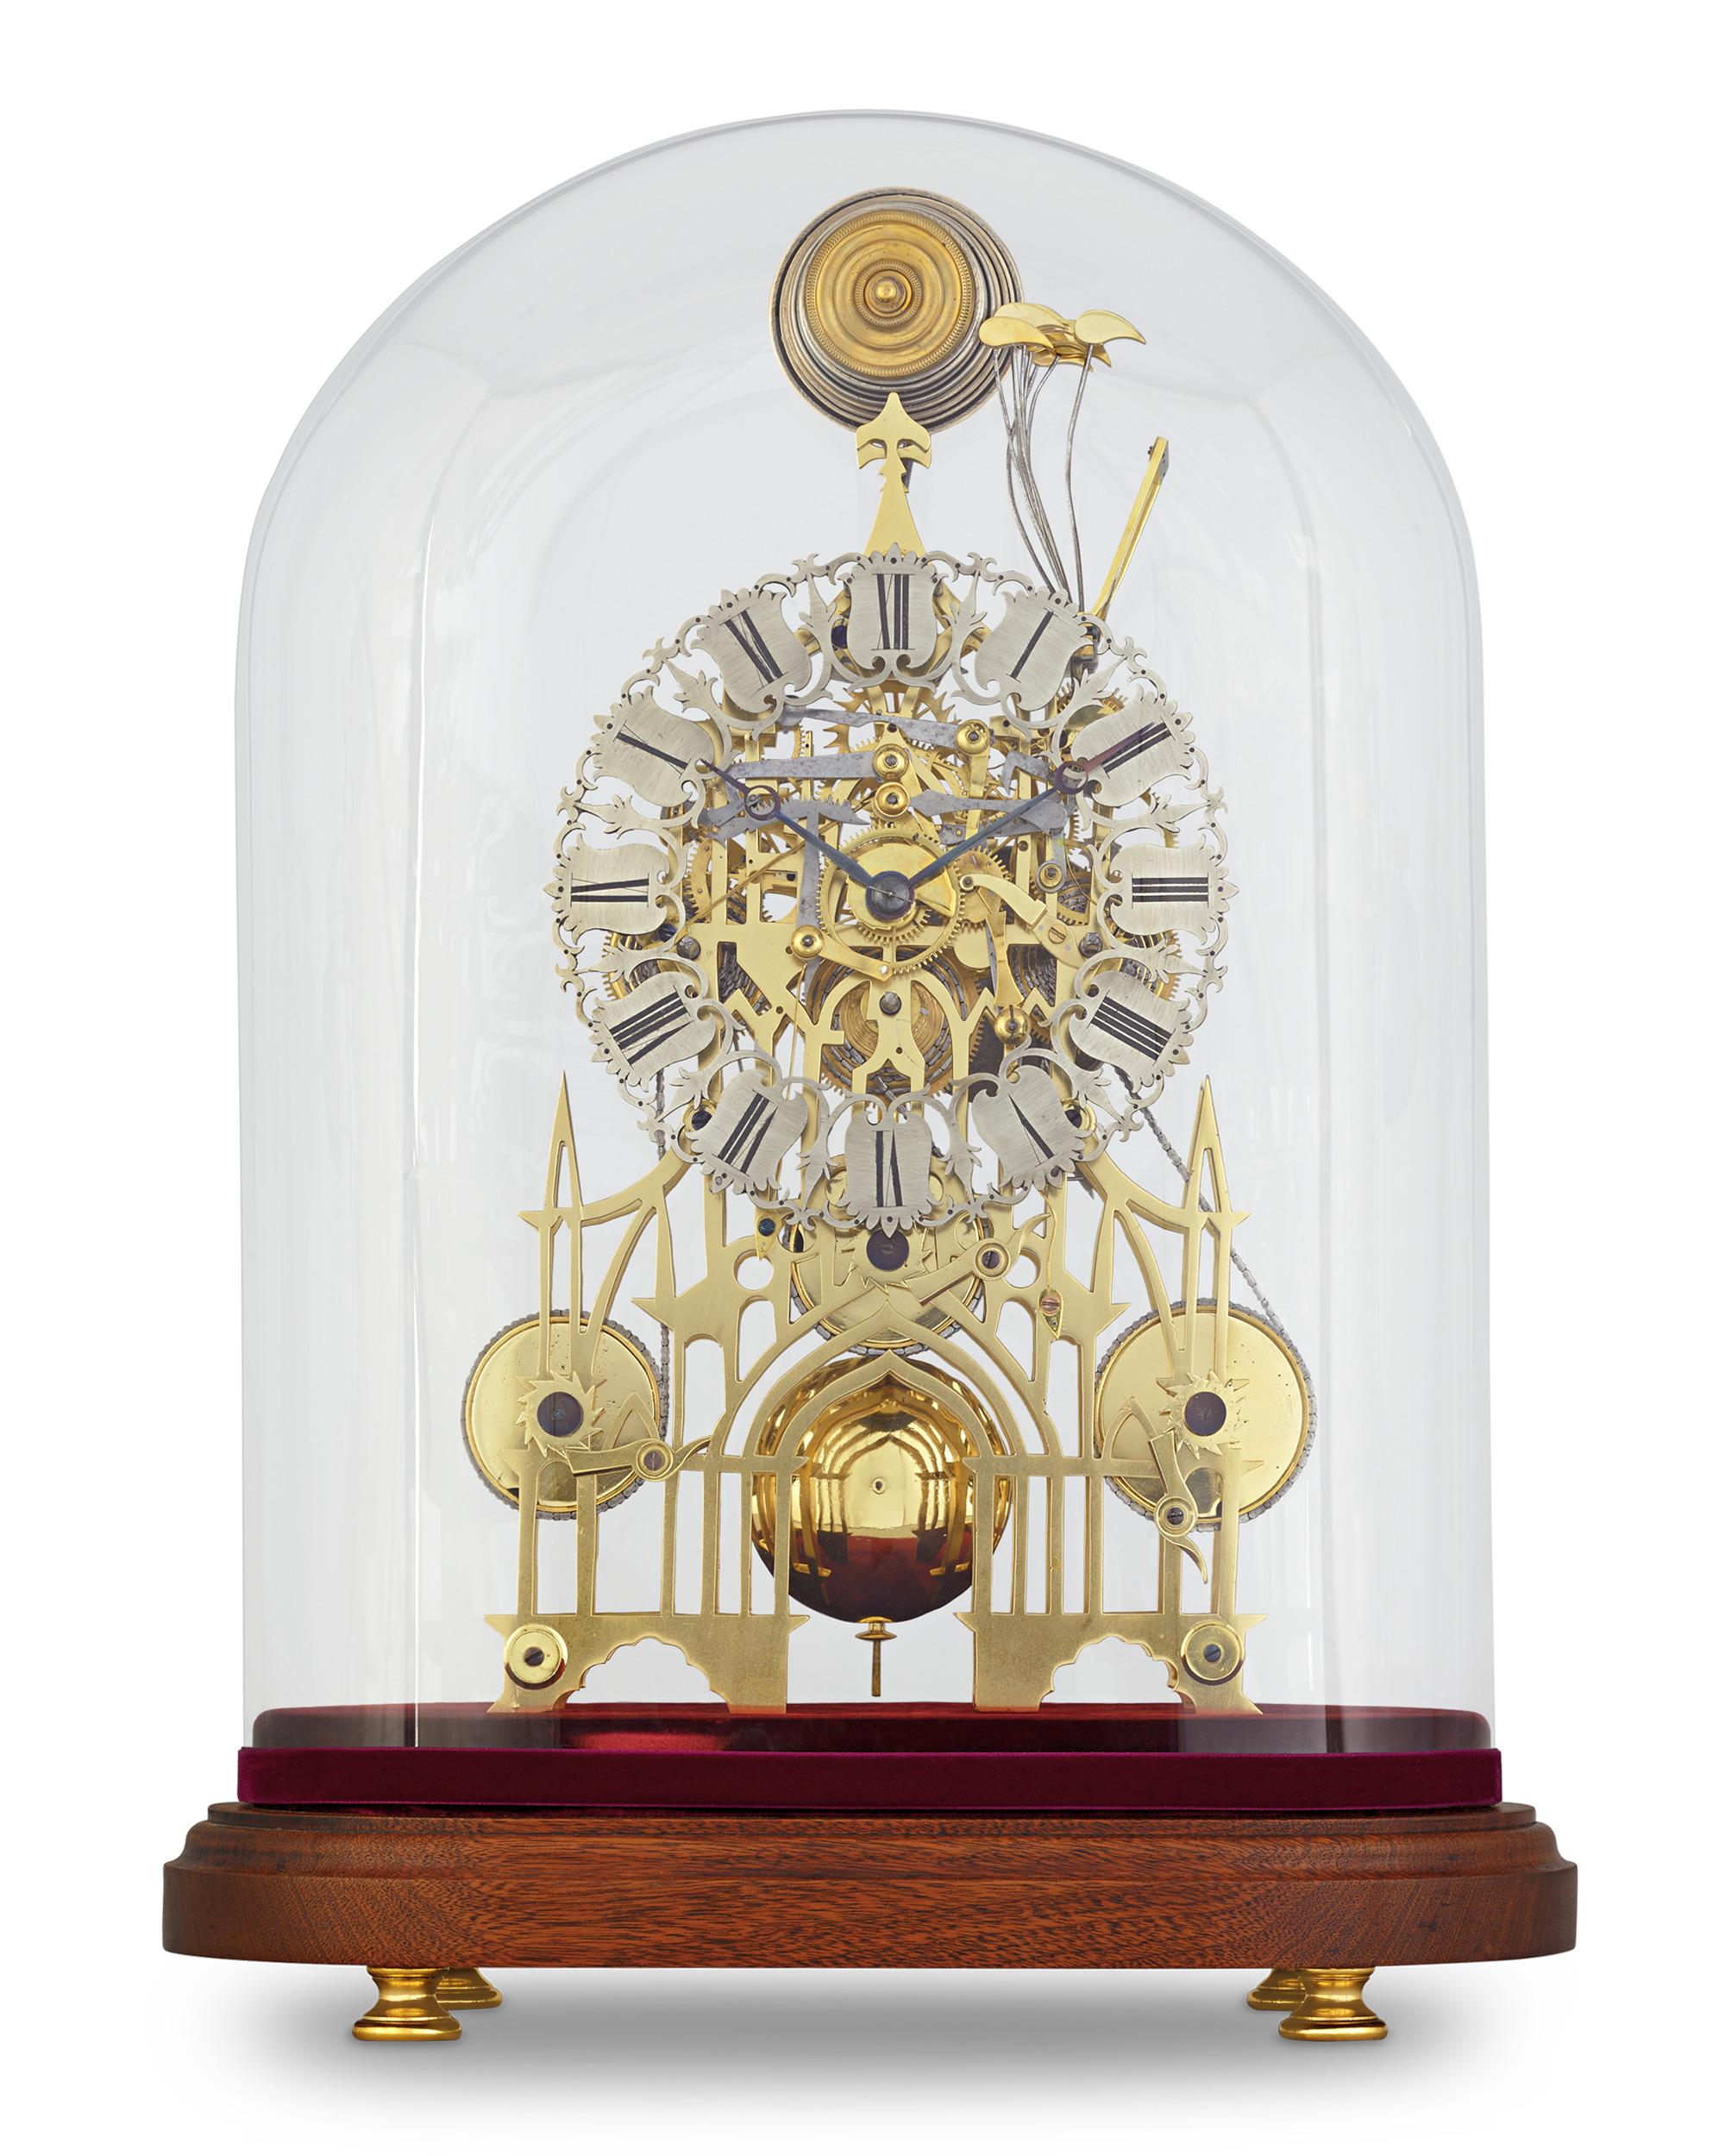 Cette horloge squelette du XIXe siècle, qui constitue une prouesse technique et artistique, a été créée par la société John Smith & Sons de Clerkenwell. Le quartier de Clerkenwell, dans le centre de Londres, a été pendant près de deux siècles l'un